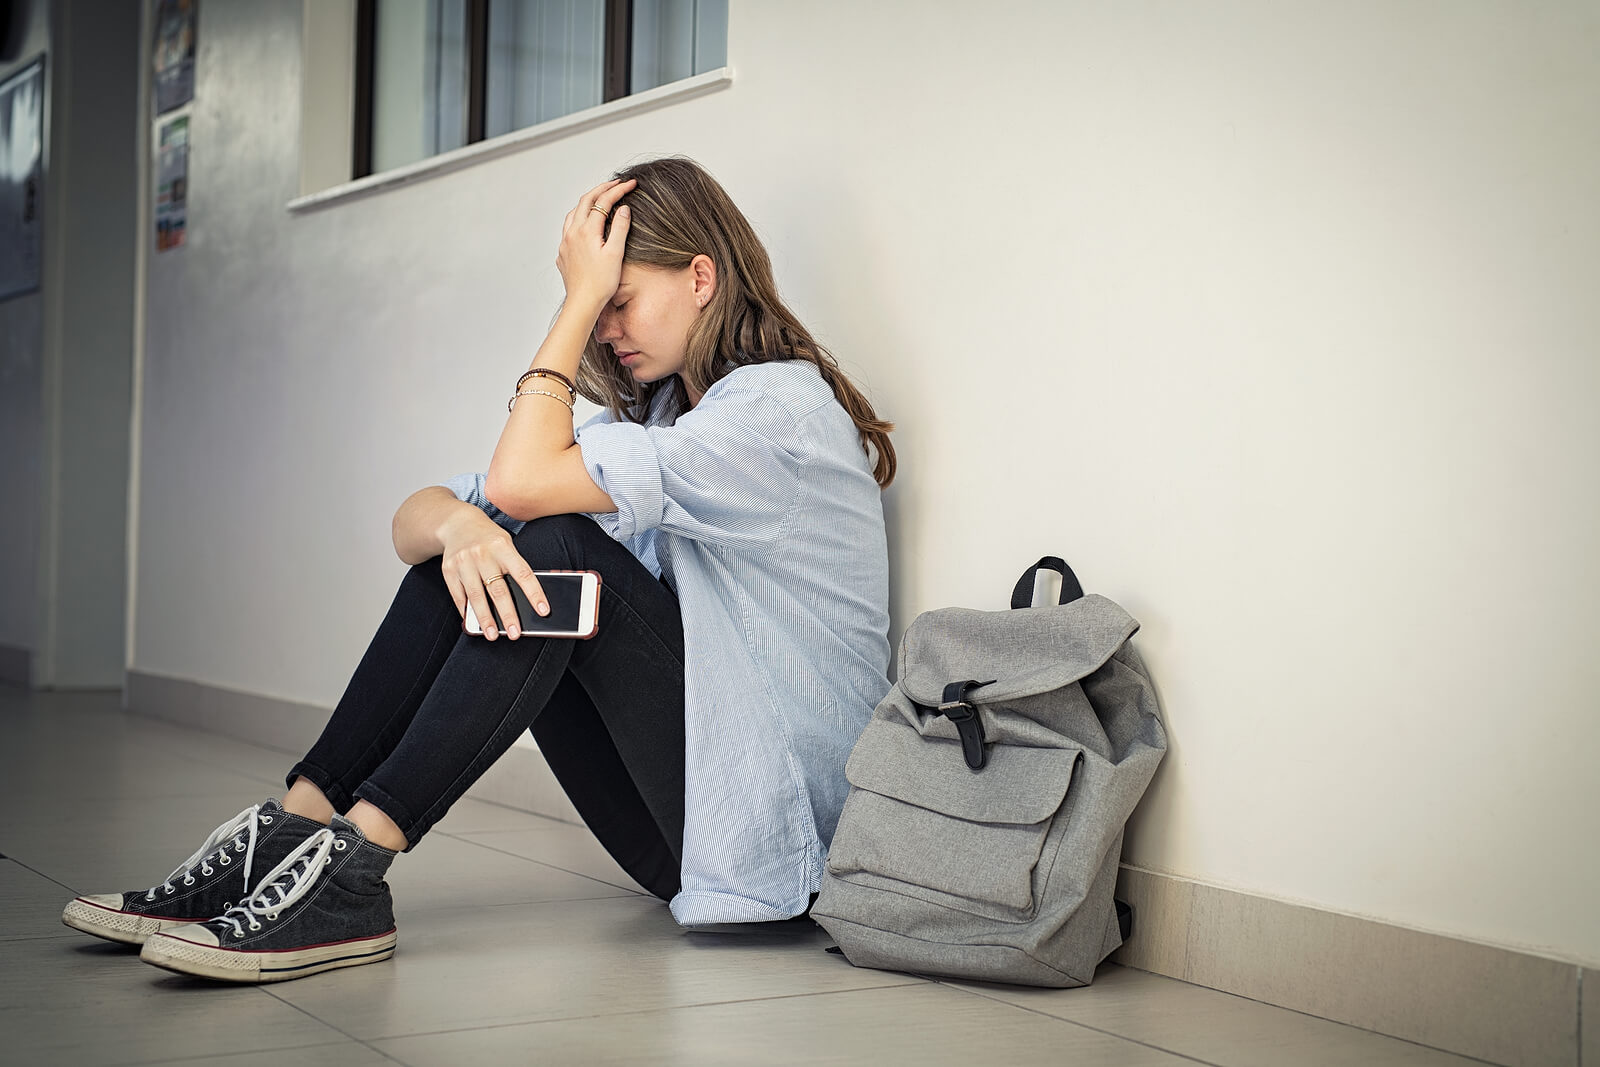 Adolescente sufriendo acoso sin saber cómo actuar frente al bullying.